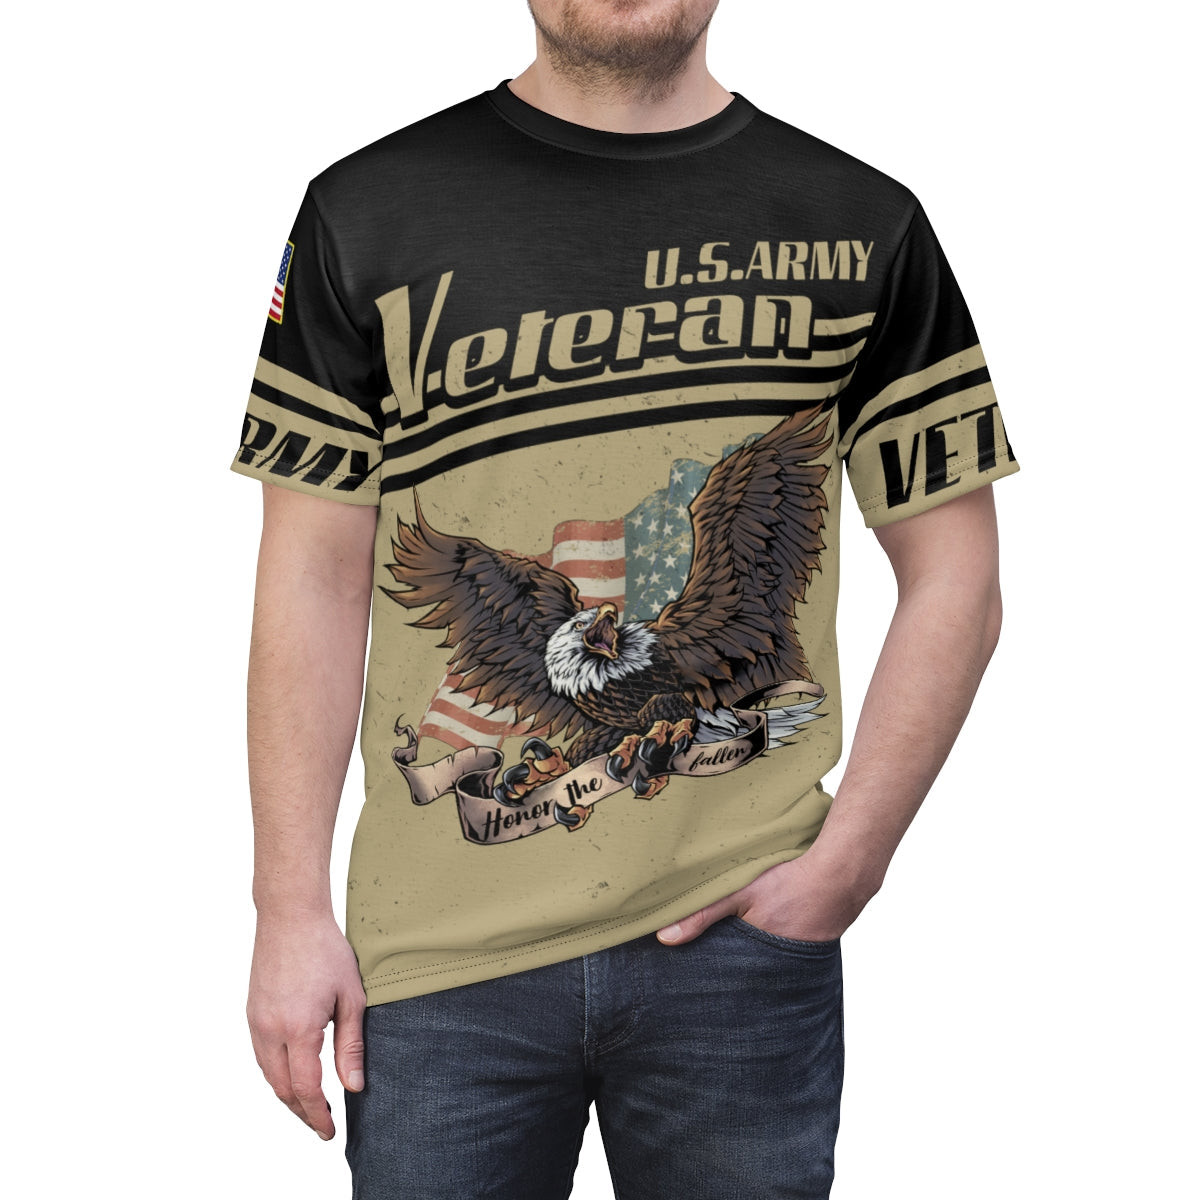 Veteran Shirt, Army Veteran, U.S Army Veteran, Honor The Fallen V2 All 3D Shirt All Over Printed Shirts